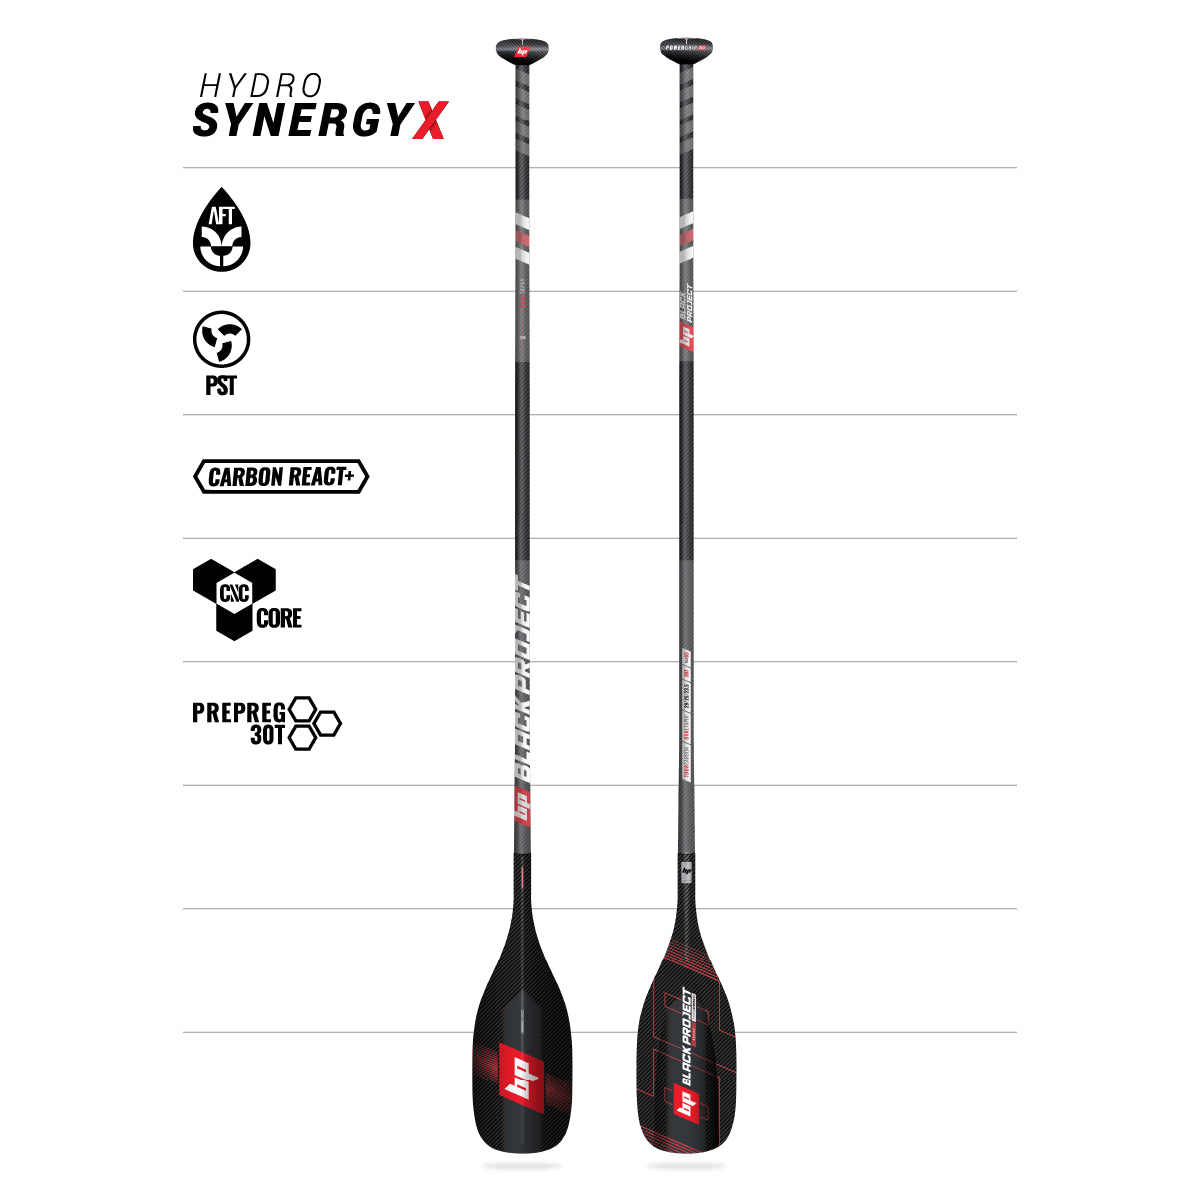 Black Project SynergyX SUP Race Paddel auf weißem Hintergrund mit den neuen Features des Paddels.